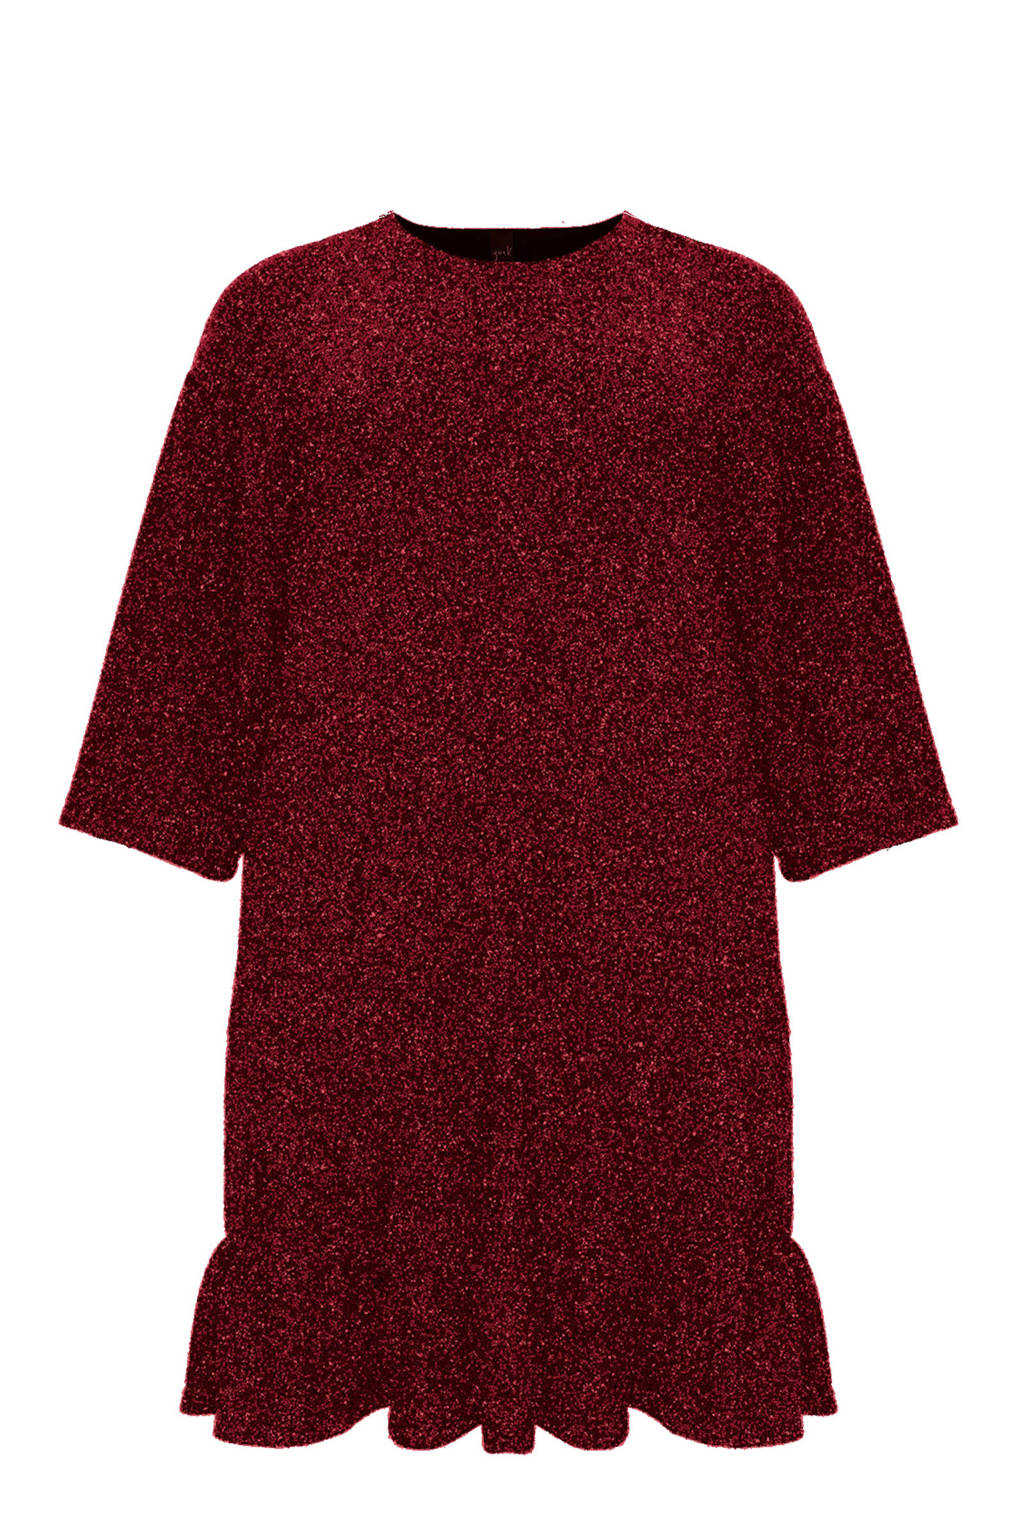 Yoek jurk SPARKLE met volant rood